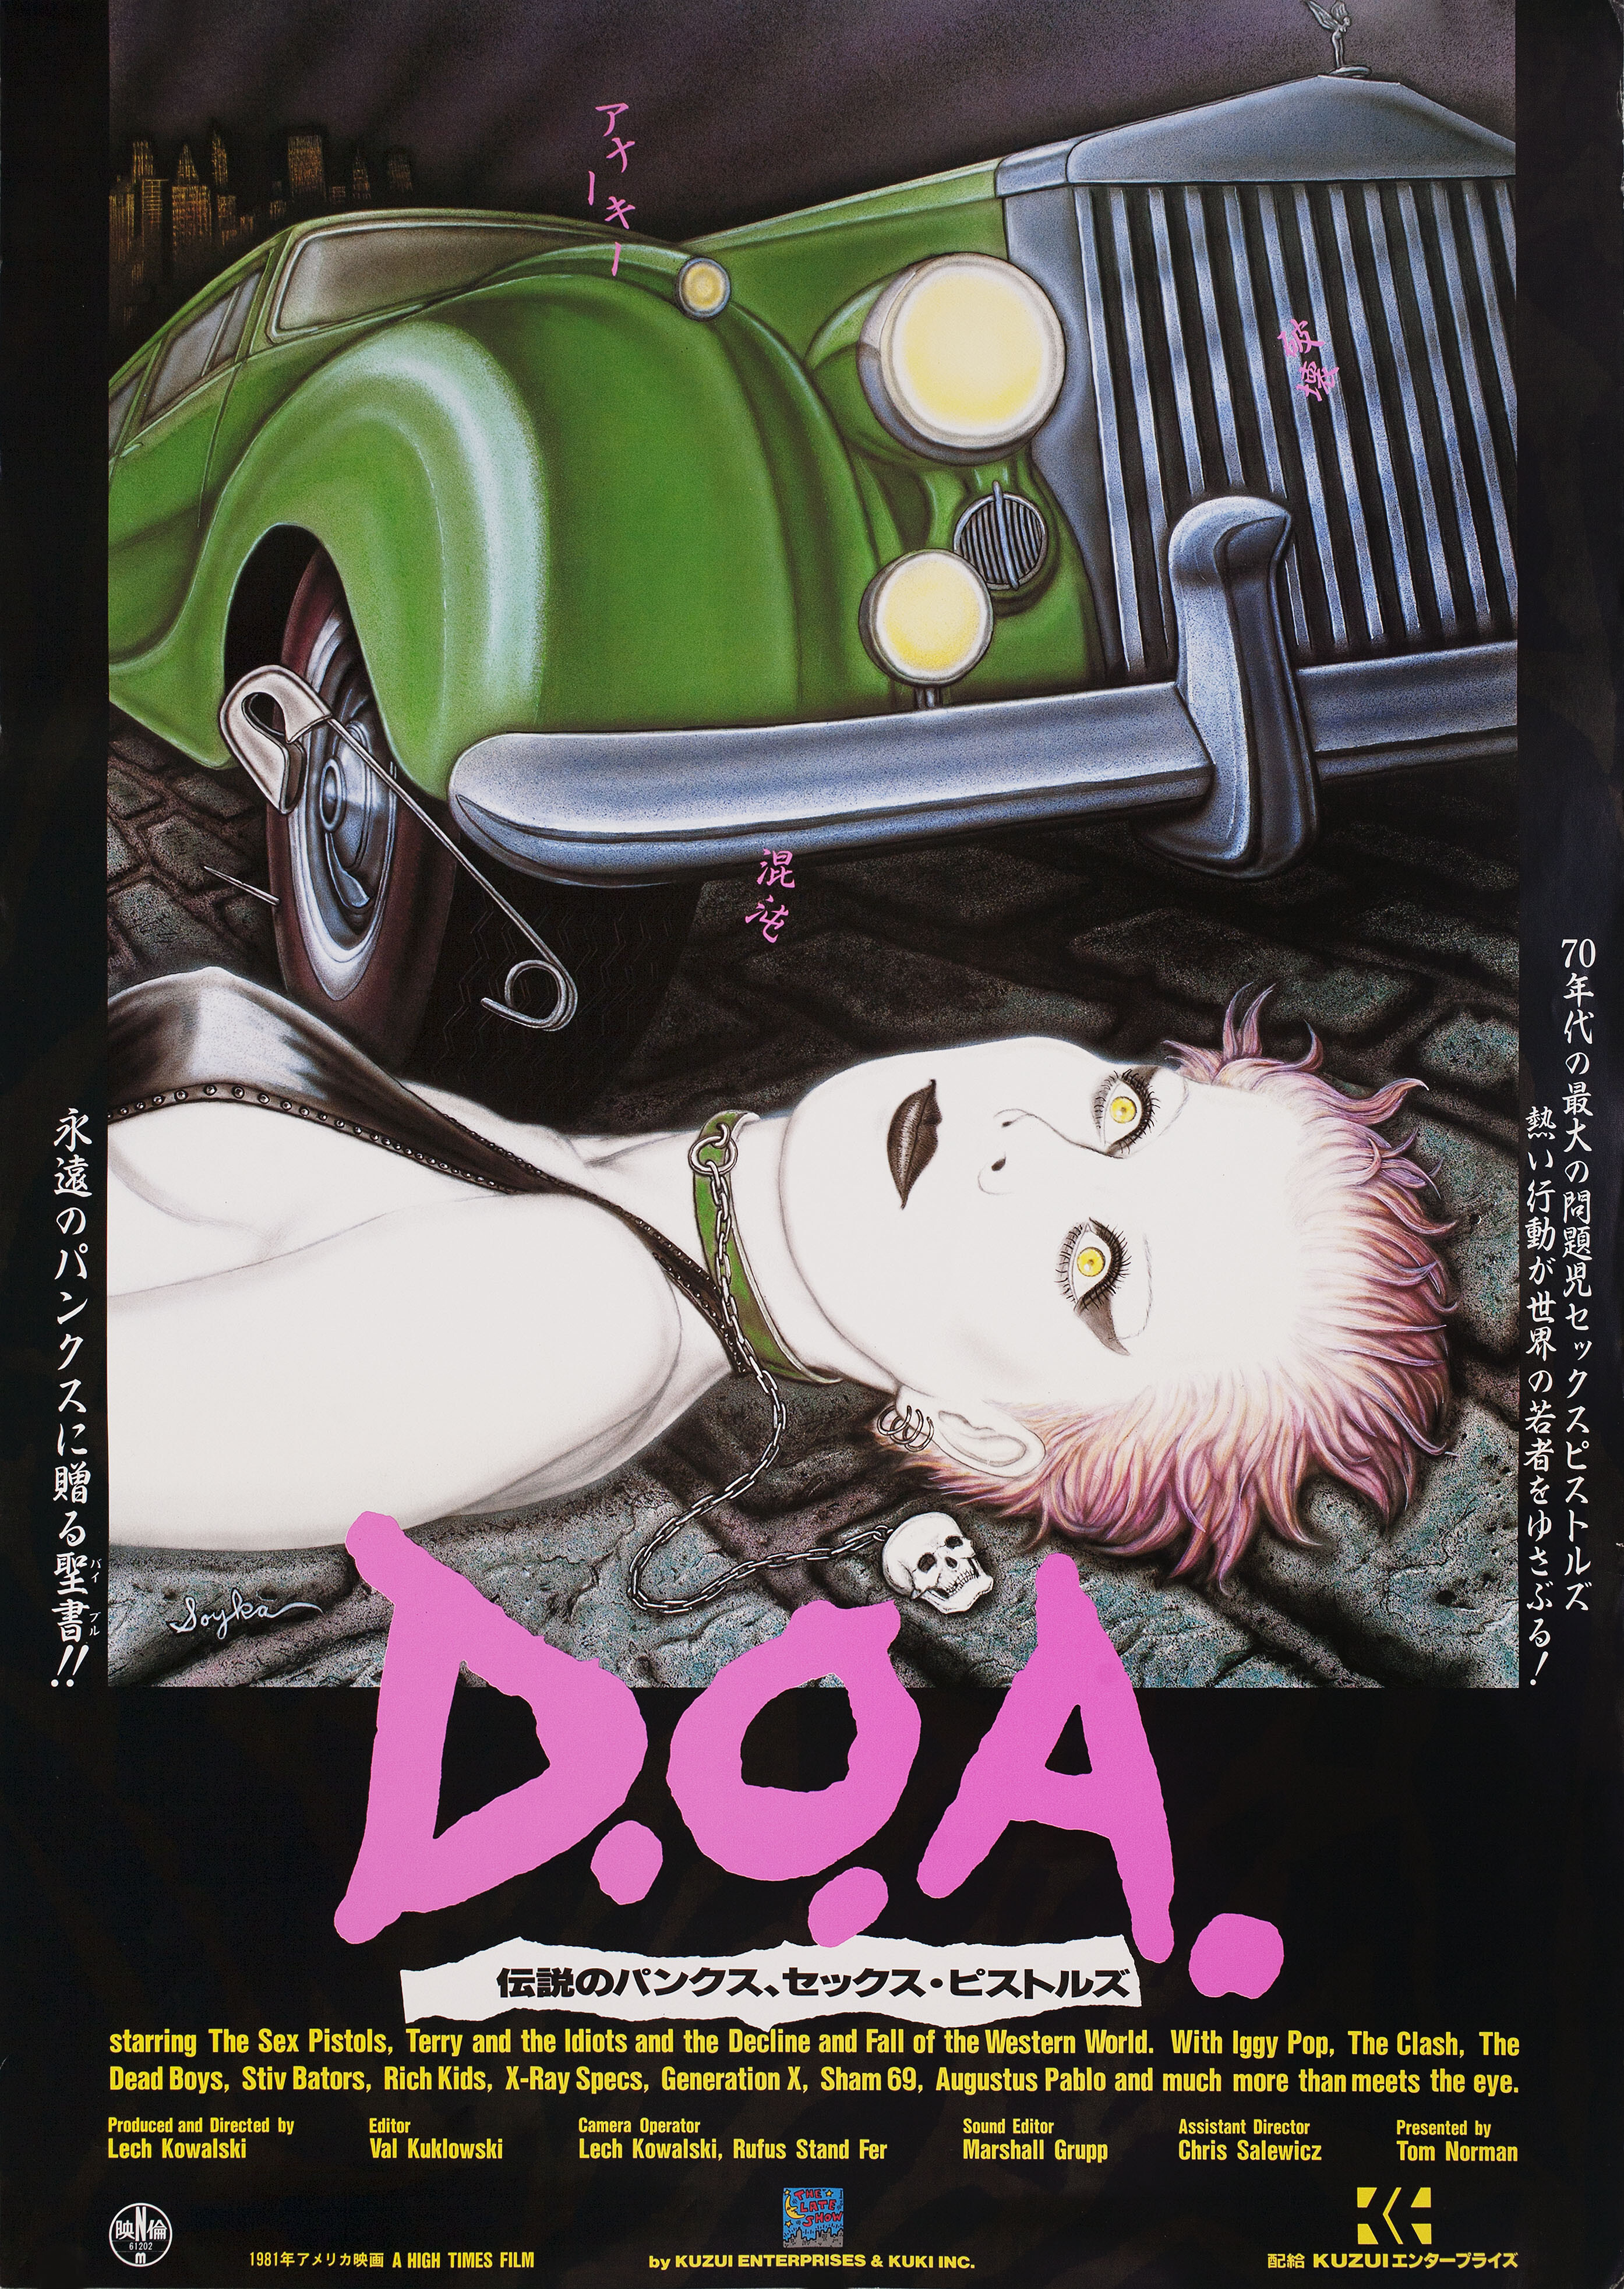 Живые или мёртвые (D.O.A. A Rite of Passage, 1980), режиссёр Лех Ковальски, иллюстрированный постер к фильму (Япония, 1981 год)